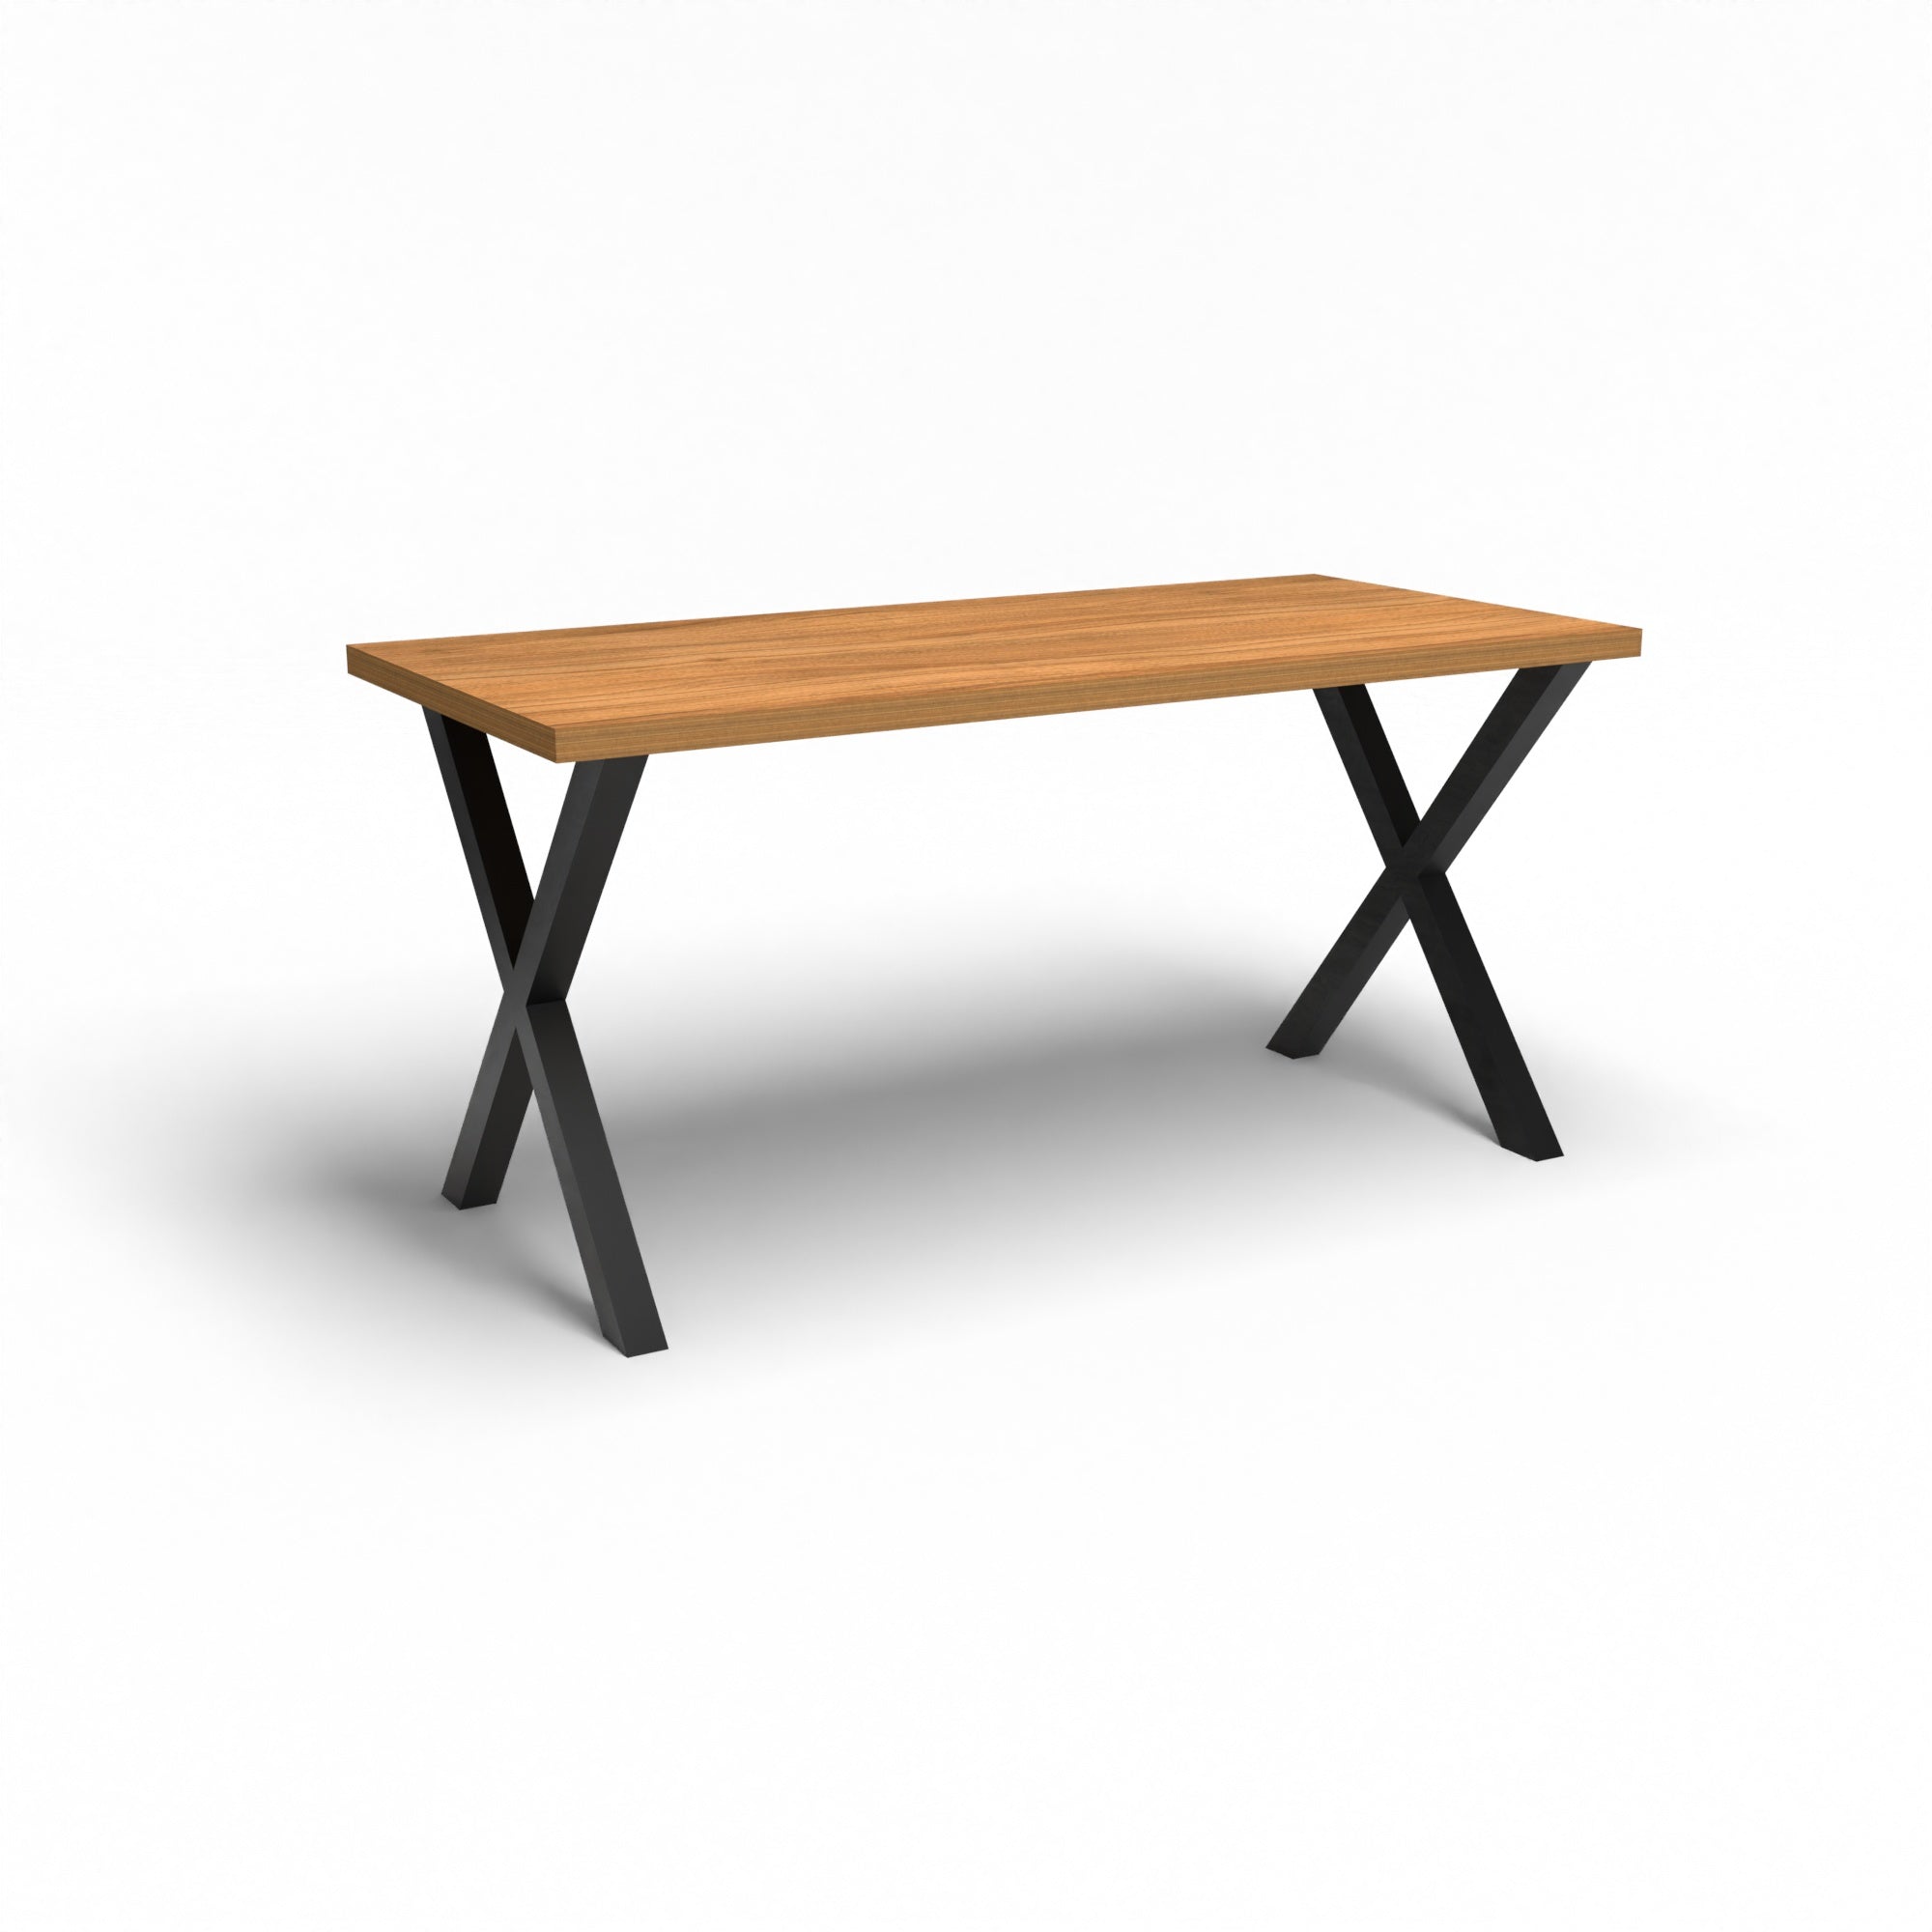 Holztisch - Nussbaum - 2 Meter